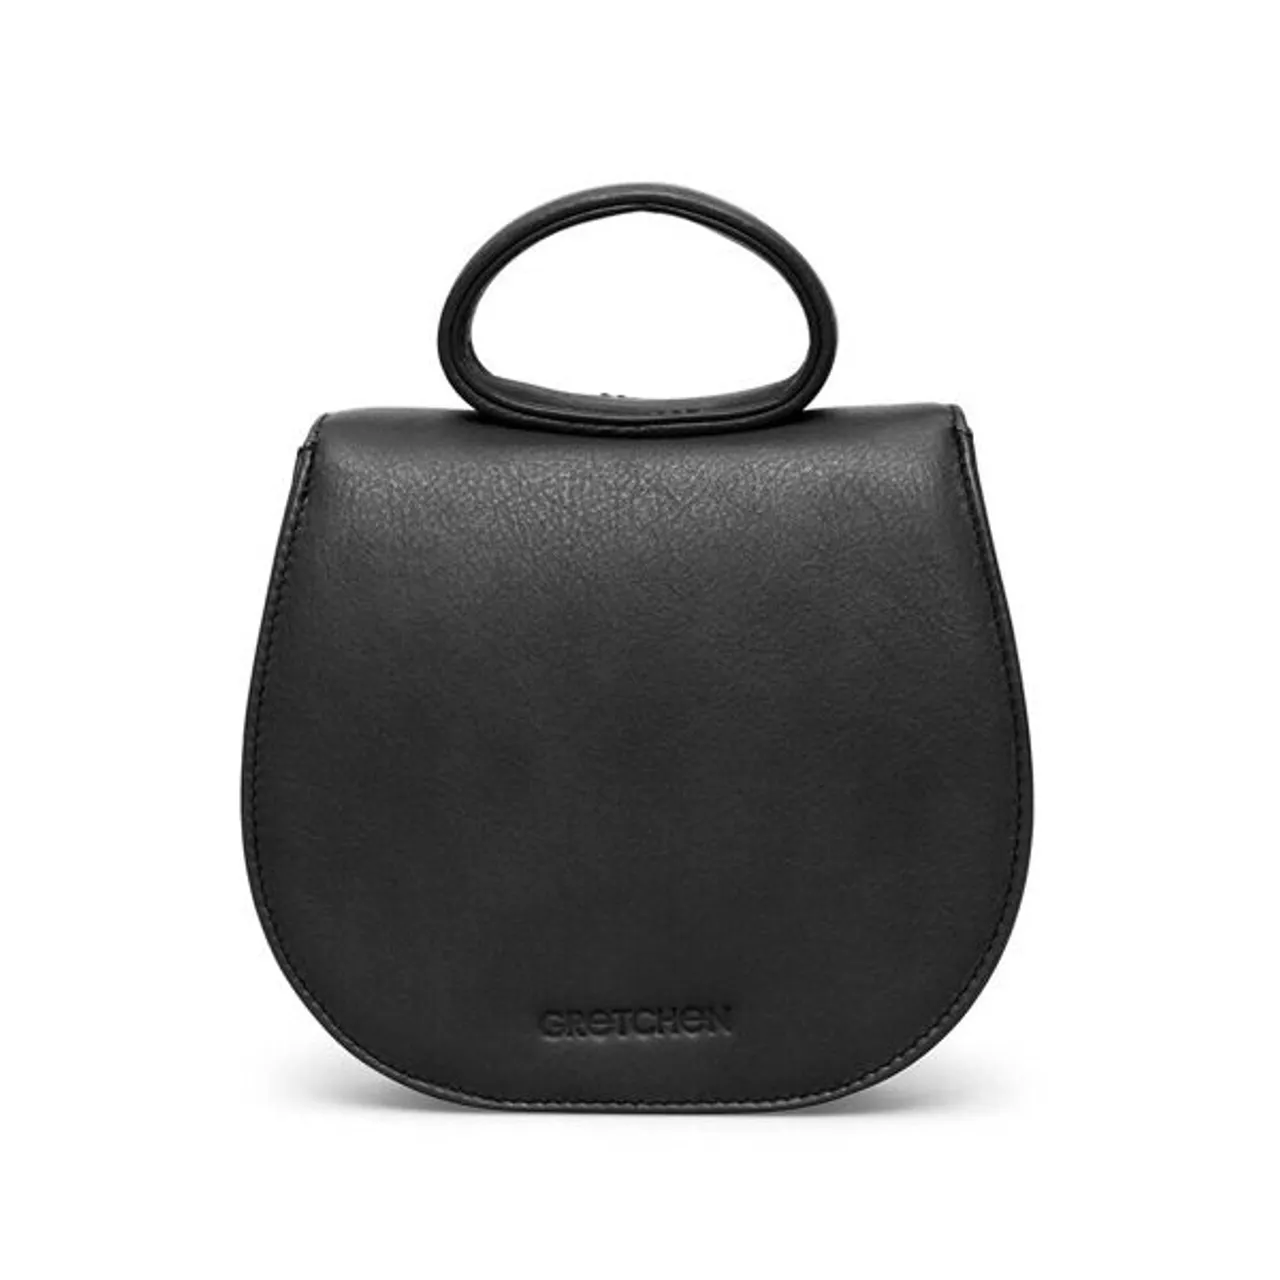 Schultertasche GRETCHEN "Ebony Mini Loop Bag" Gr. B/H/T: 25 cm x 17 cm x 19 cm, schwarz Damen Taschen Handtaschen aus italienischem Kalbsleder